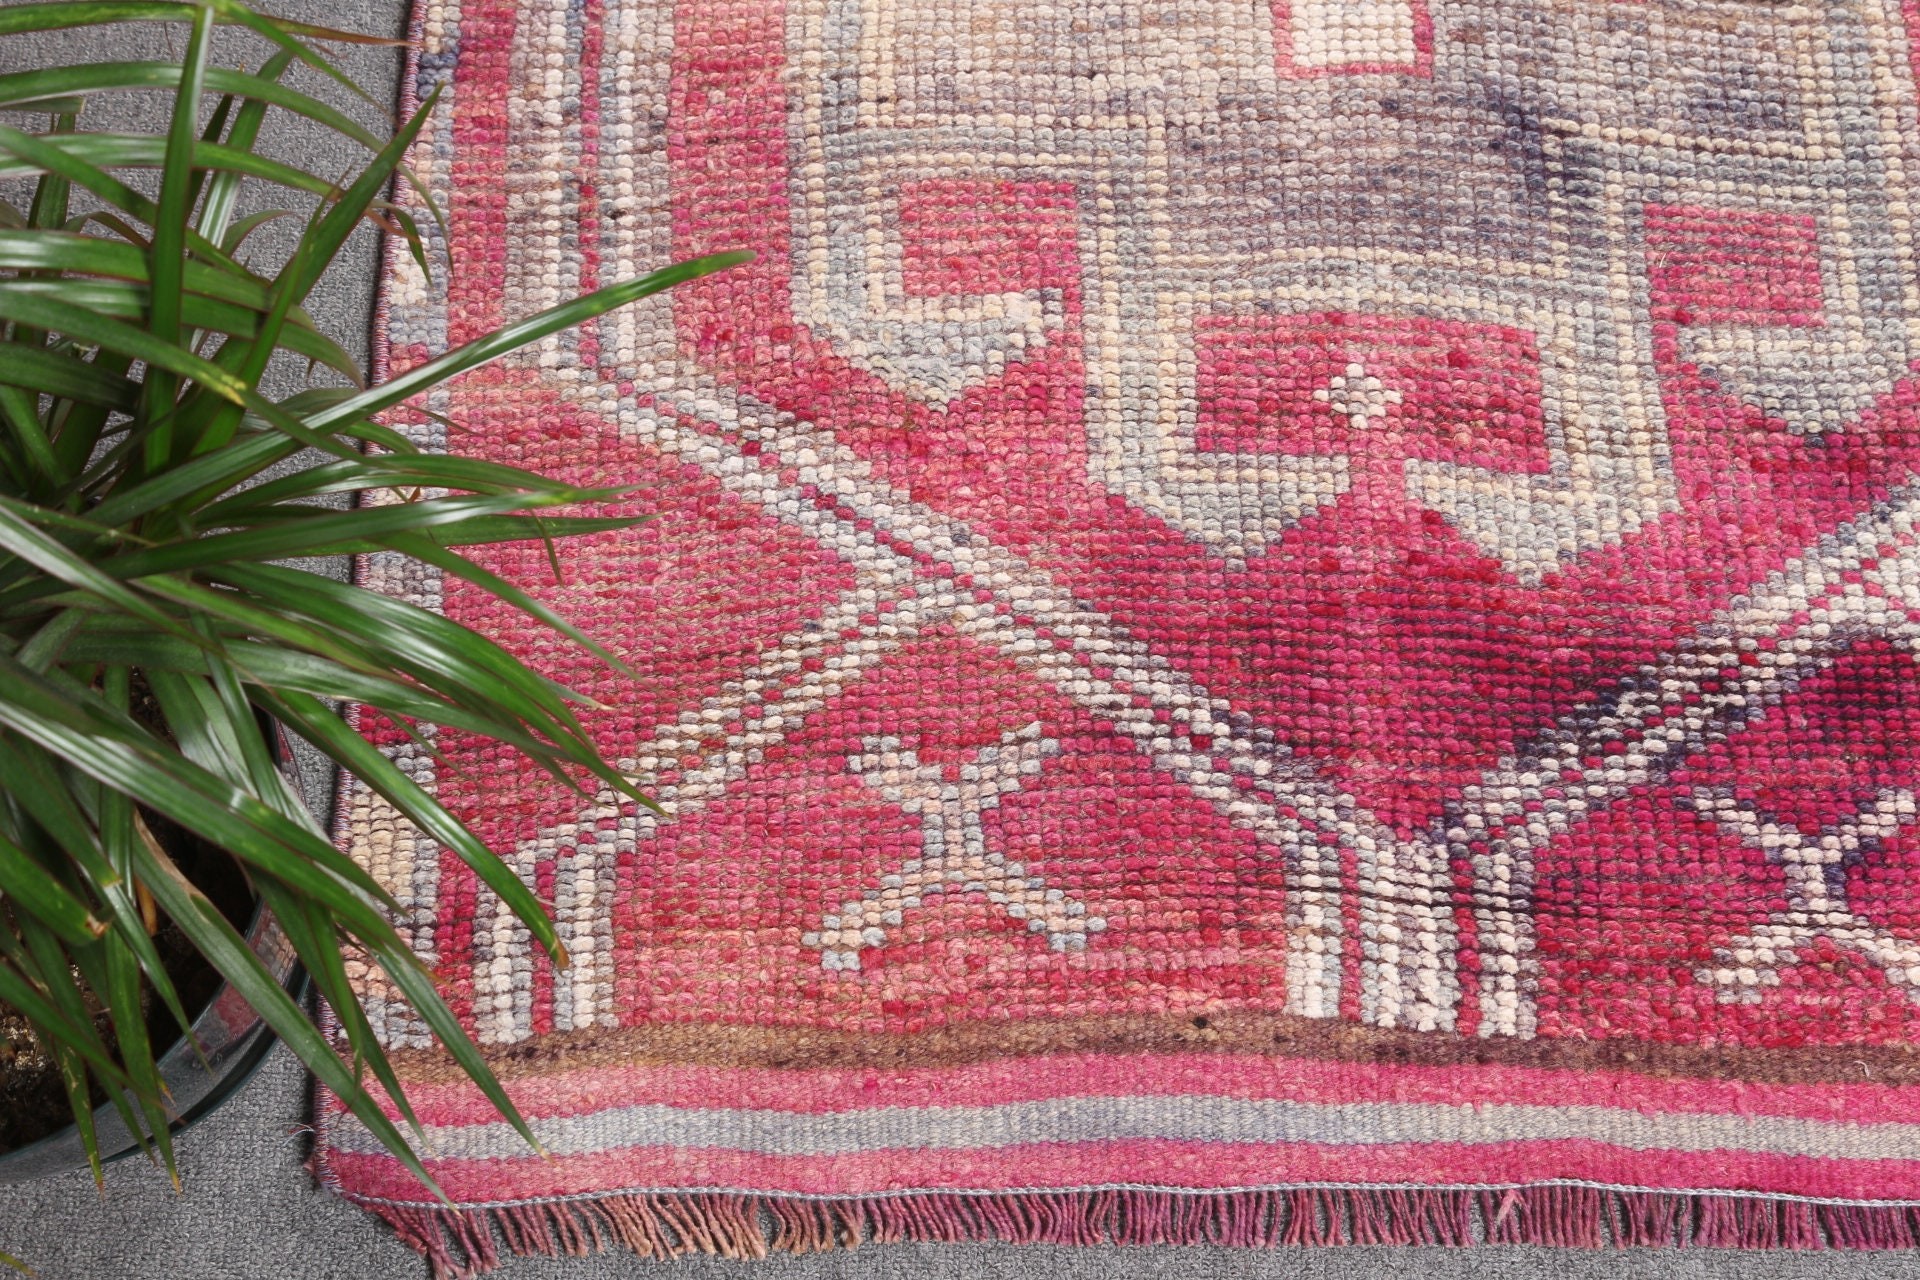 2.8x10.2 ft Runner Rugs, Turkish Rugs, Oriental Rugs, Wool Rugs, Vintage Rug, Rugs for Kitchen, Hallway Rugs, Tribal Rugs, Pink Oushak Rug